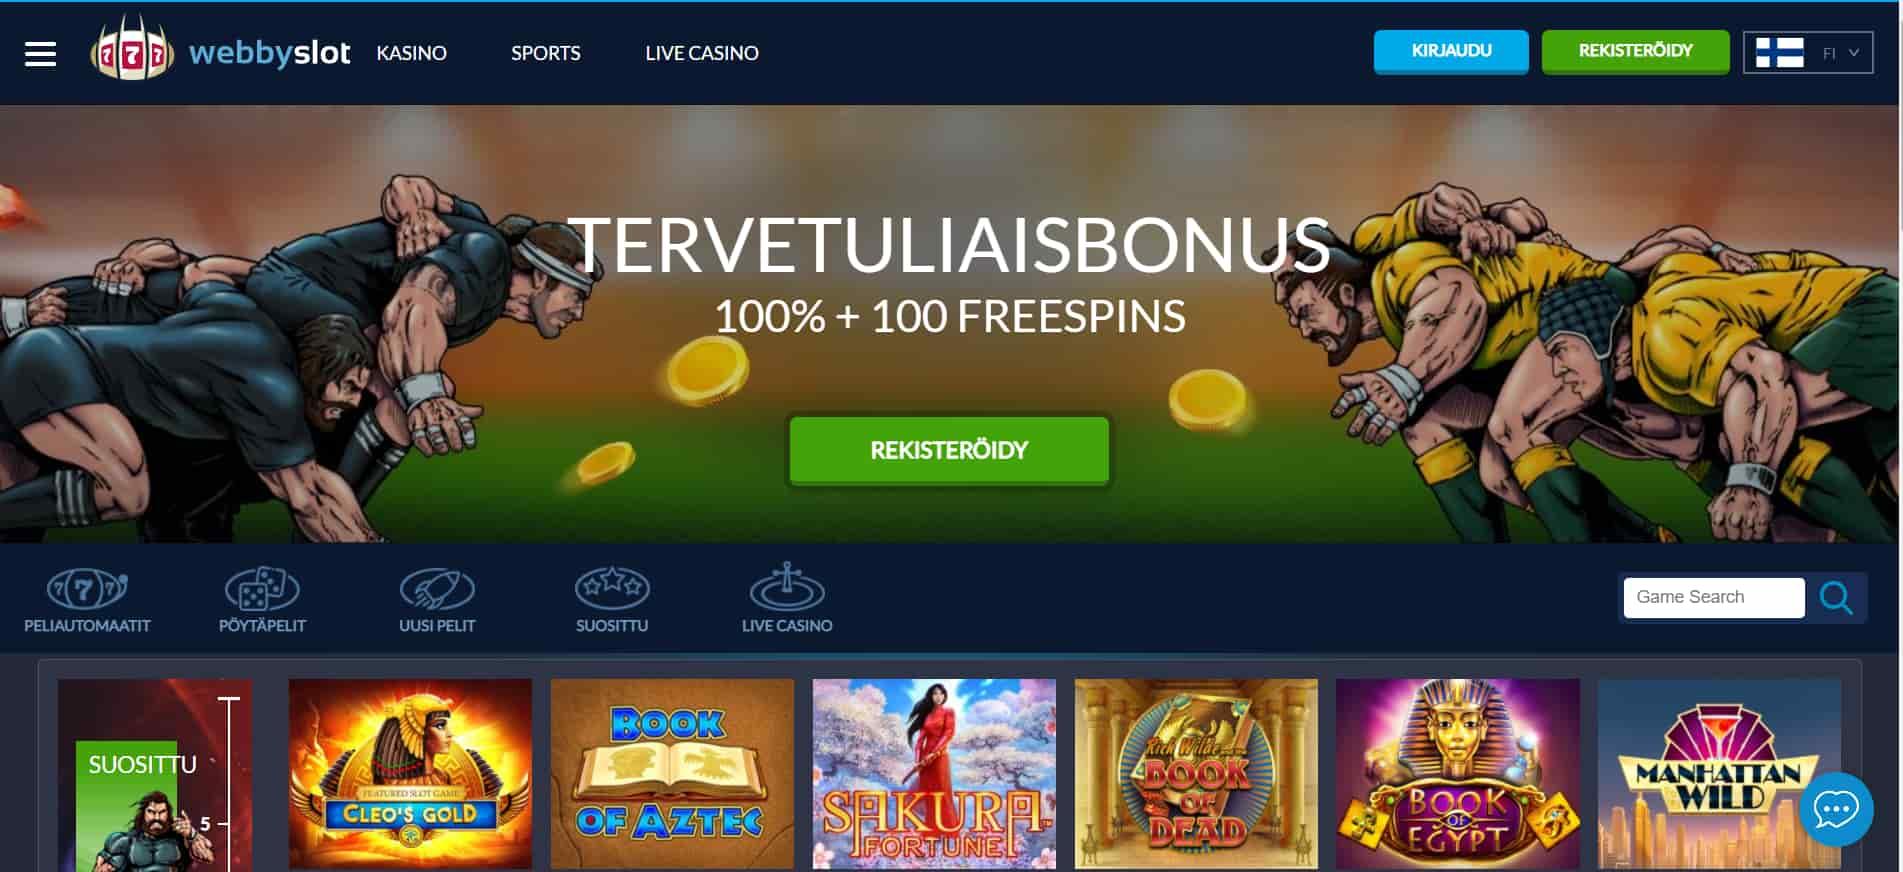 WebbySlot casino homepage